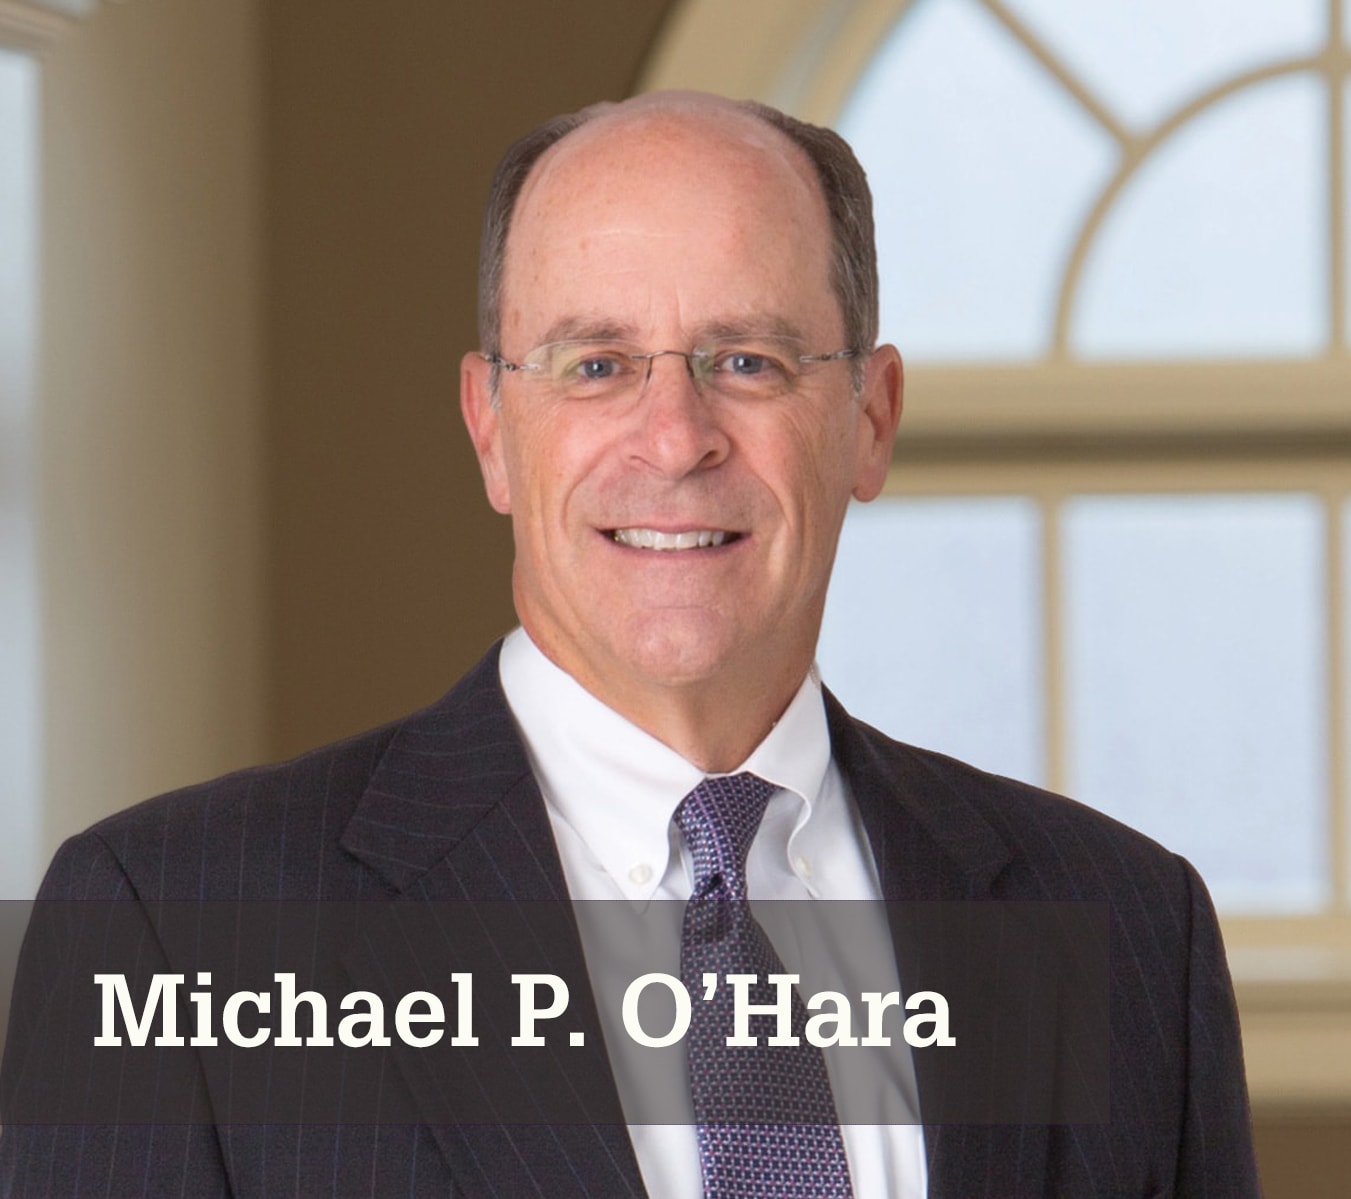 Michael P. O'Hara